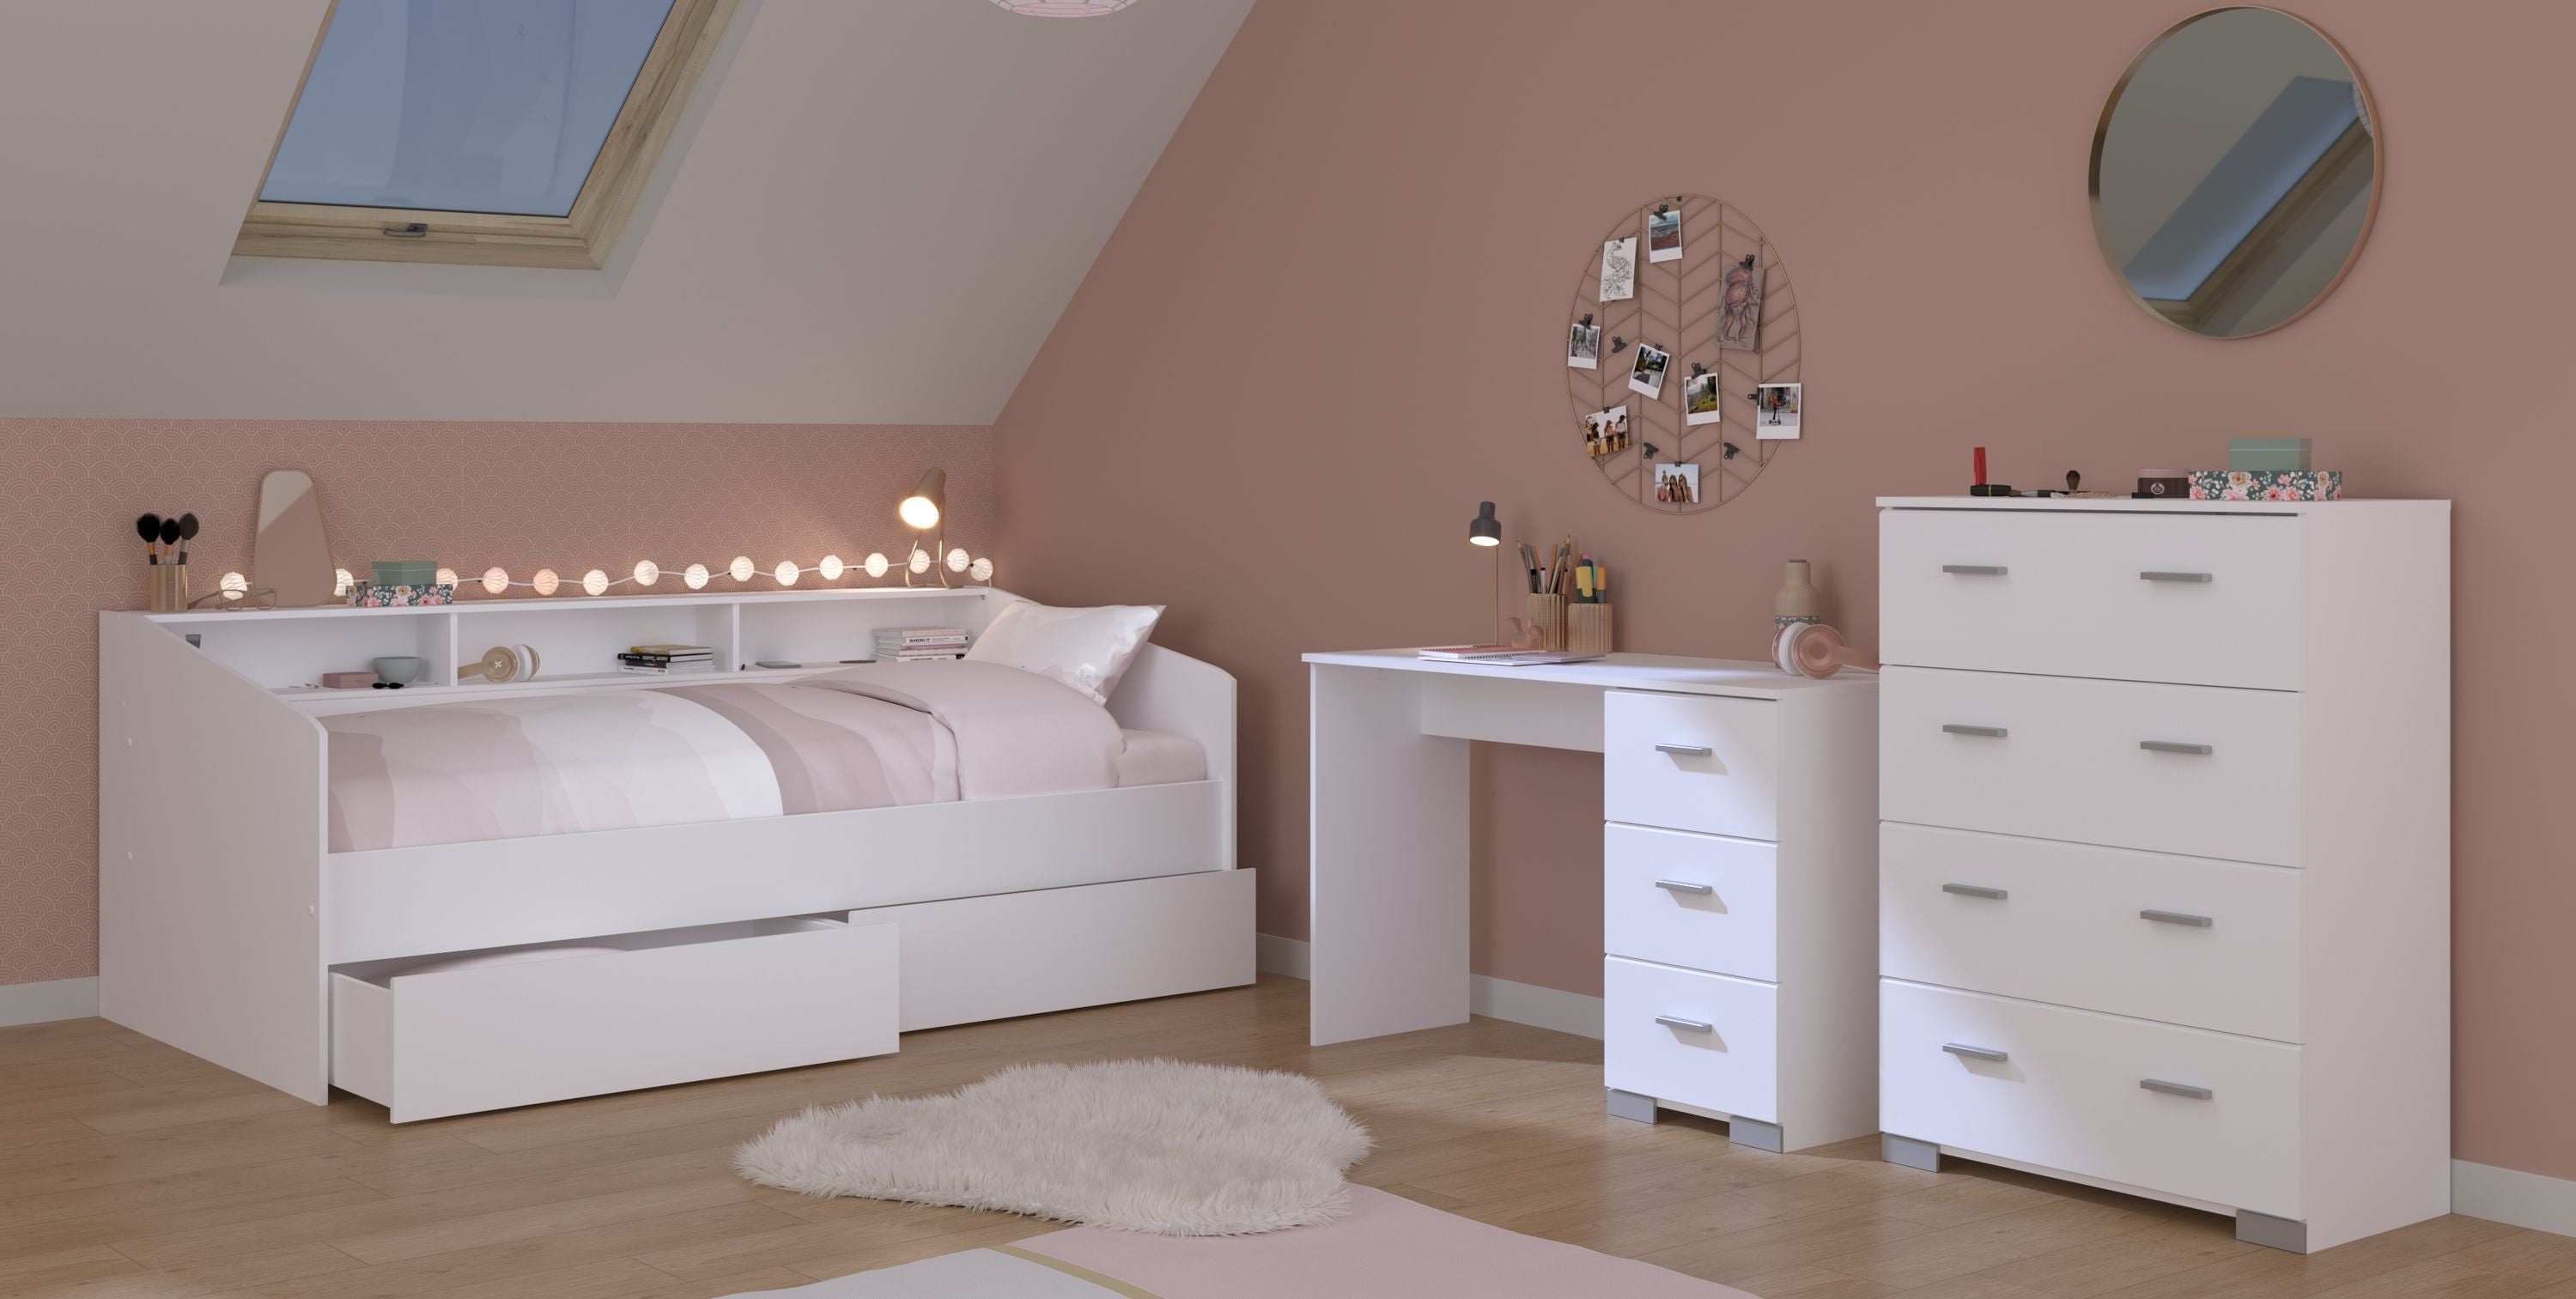 Jugendzimmer Sleep Parisot weiß inkl. Bett + 2 Bettkästen + weitere passende Möbel